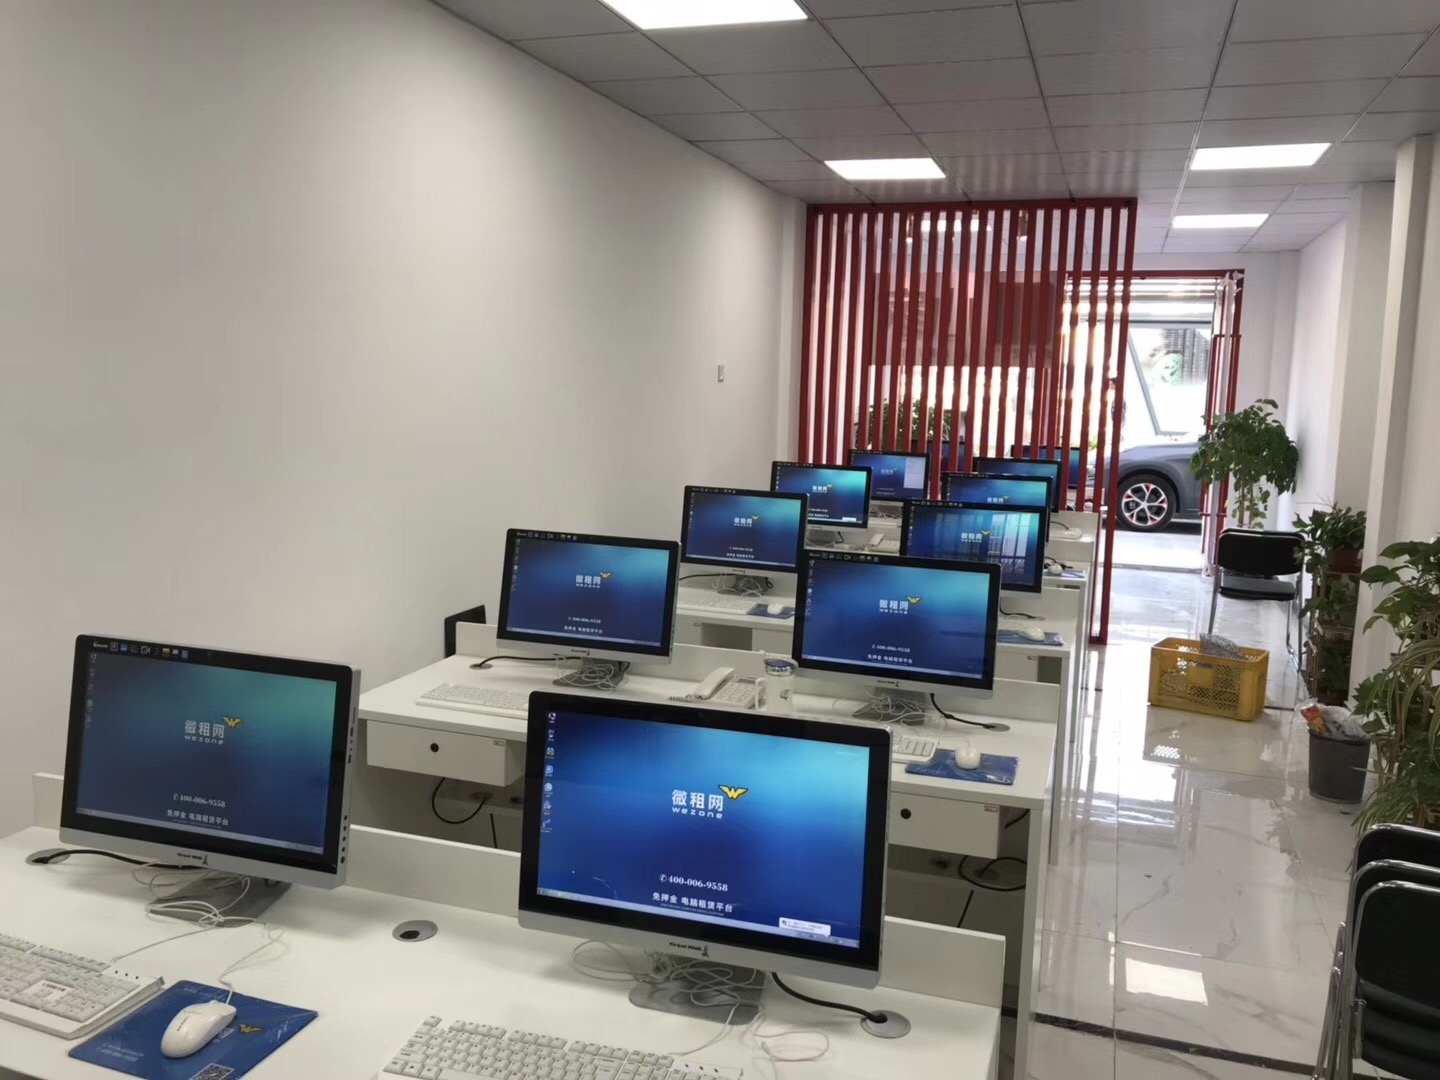 杭州长期租电脑平台 租赁办公设备 免费维护